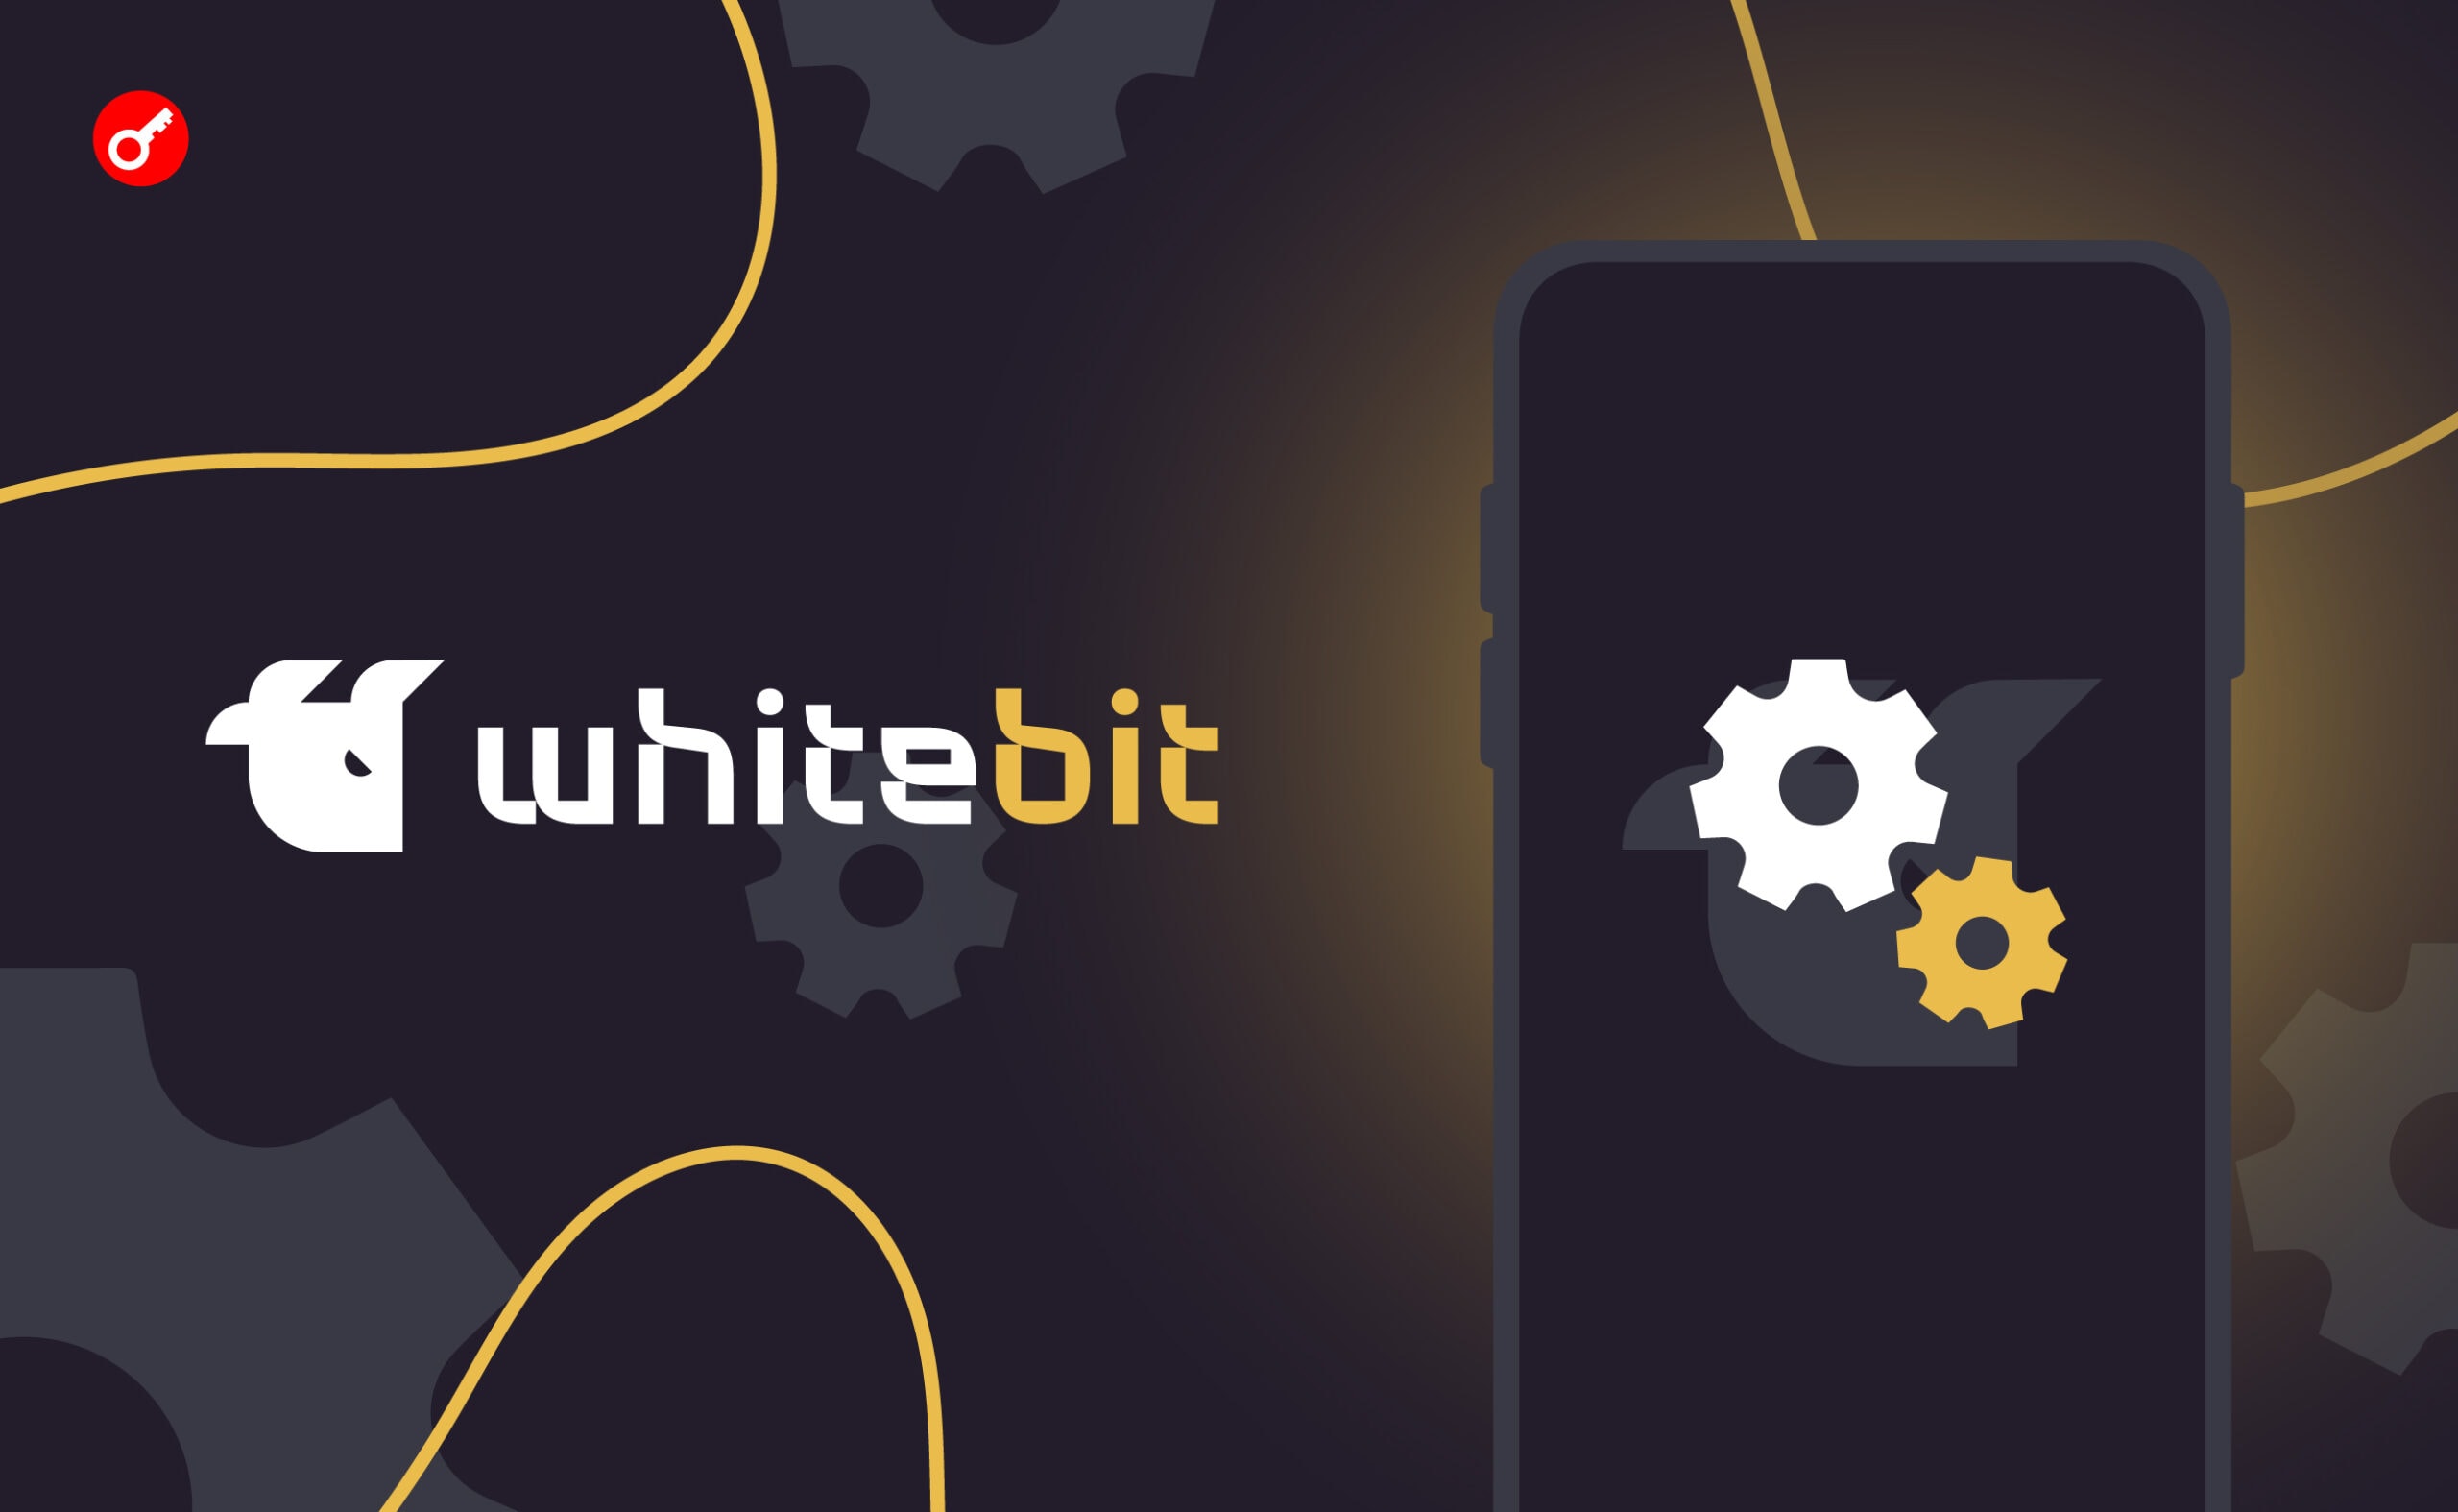 Биржа WhiteBIT объявила об обновлении приложения. Заглавный коллаж новости.